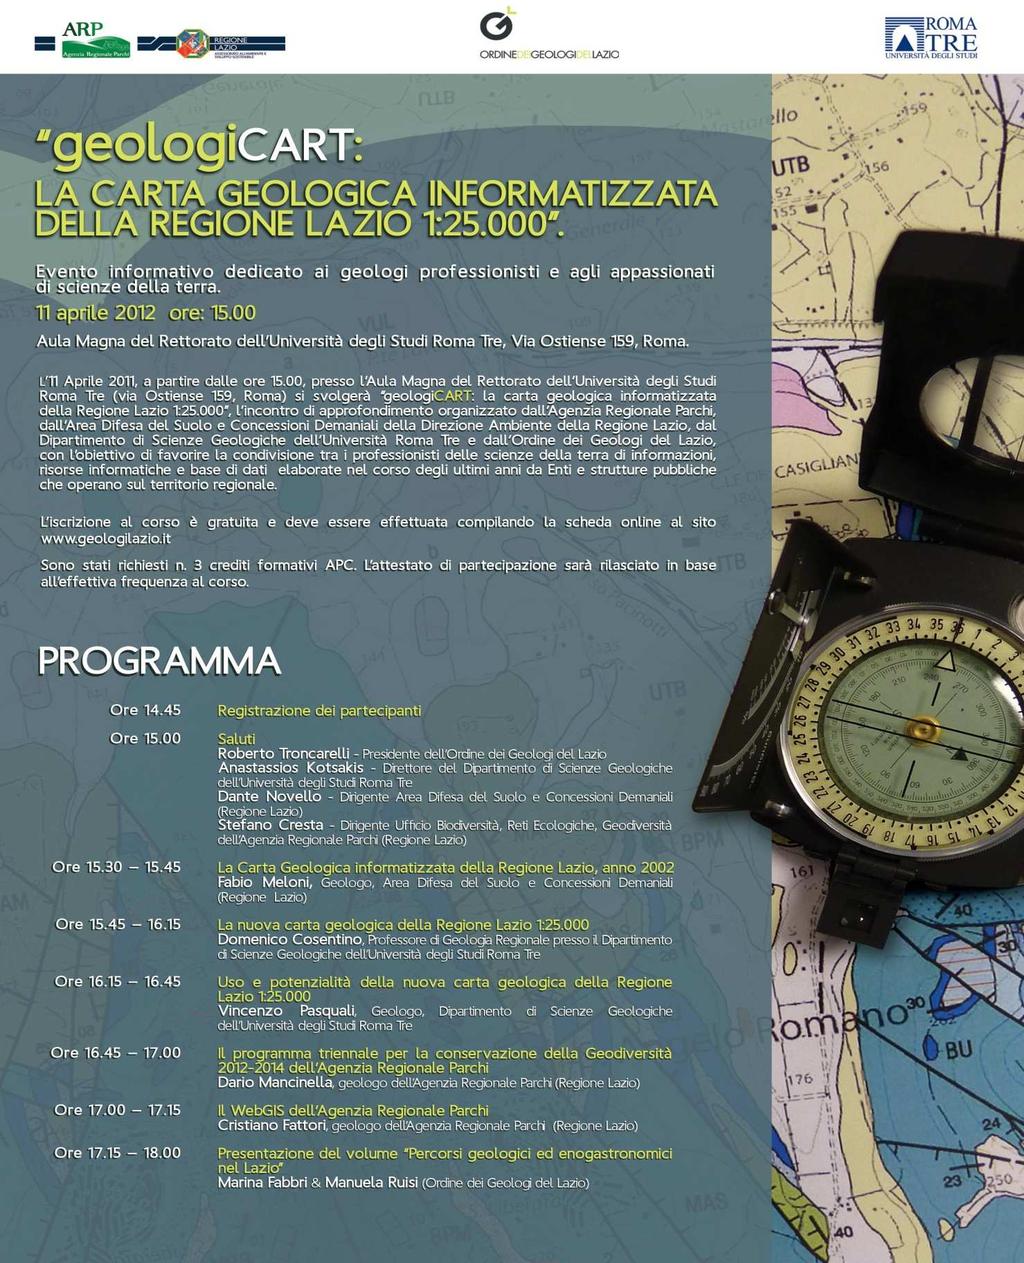 - Presentazione della Carta geologica informatizzata della Regione Lazio in scala 1:25.